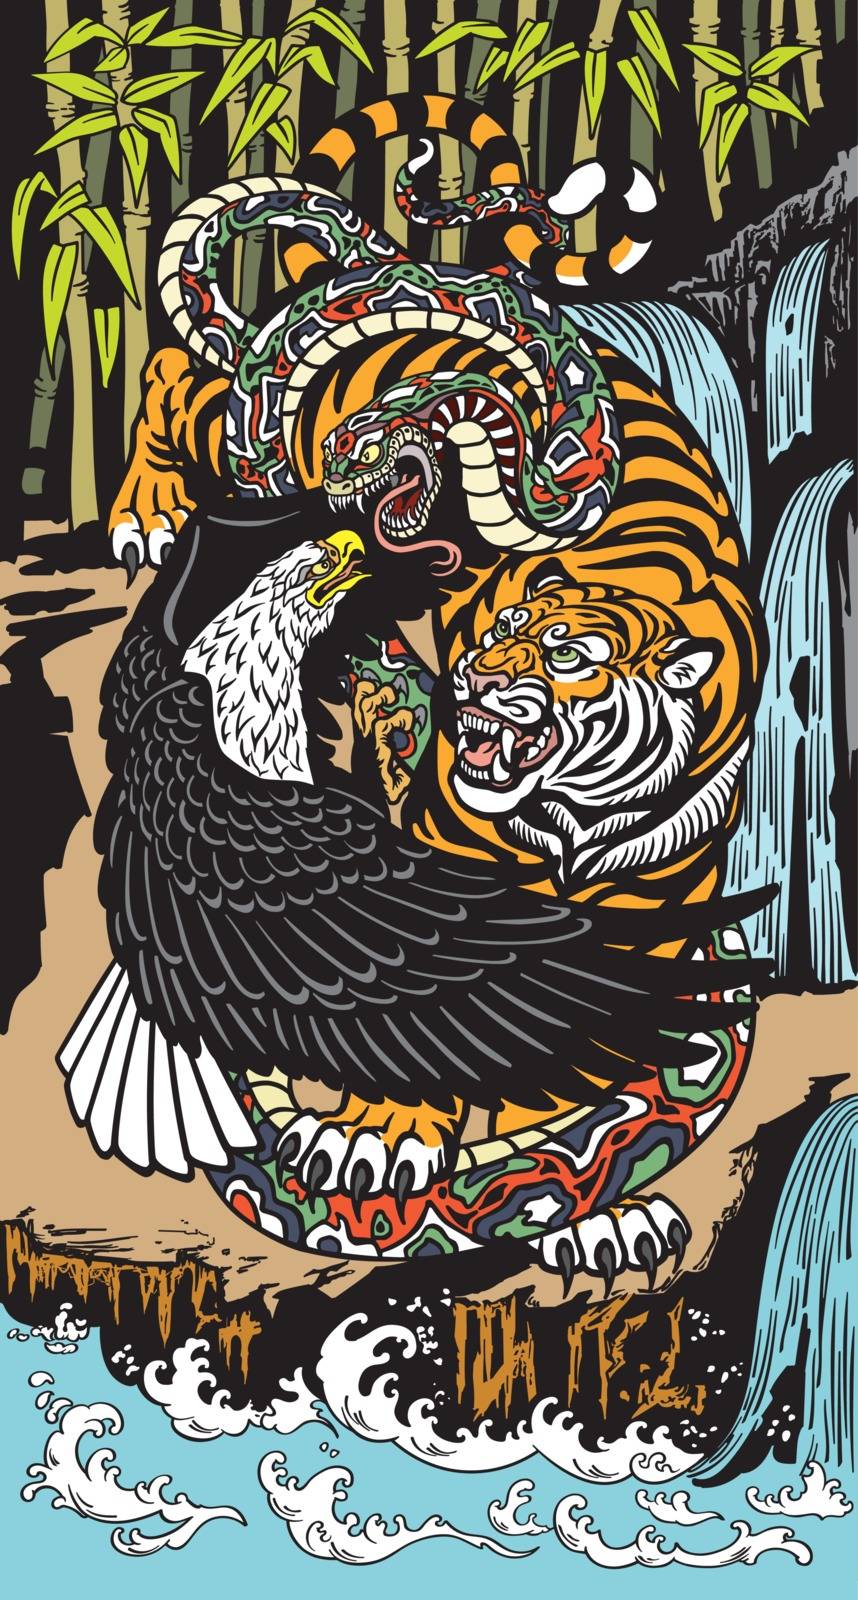 eagle tiger snake illustration by insima